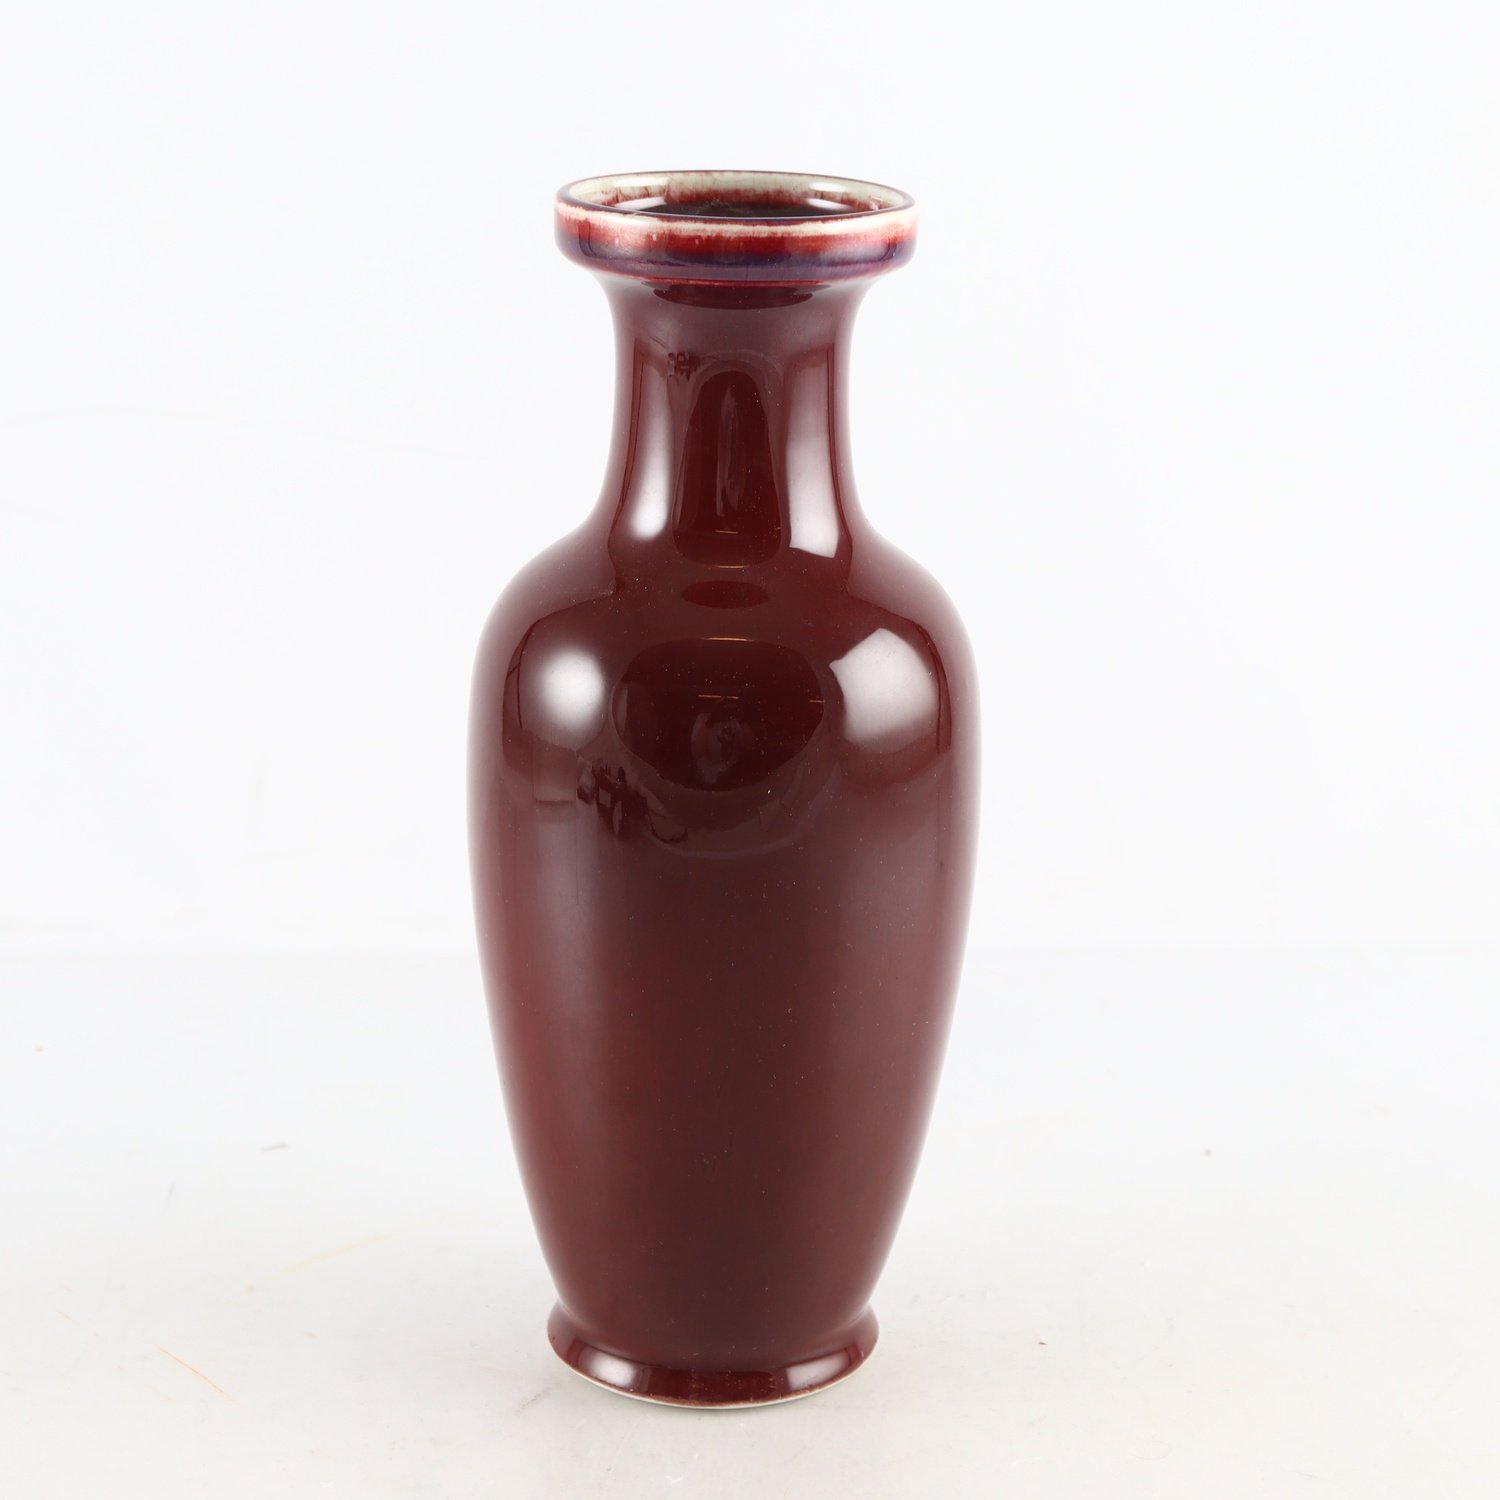 Vas, oxblodsglasyr, tecken på botten av vasen. Gjord i Jindezhen, Kina, Samfr ej